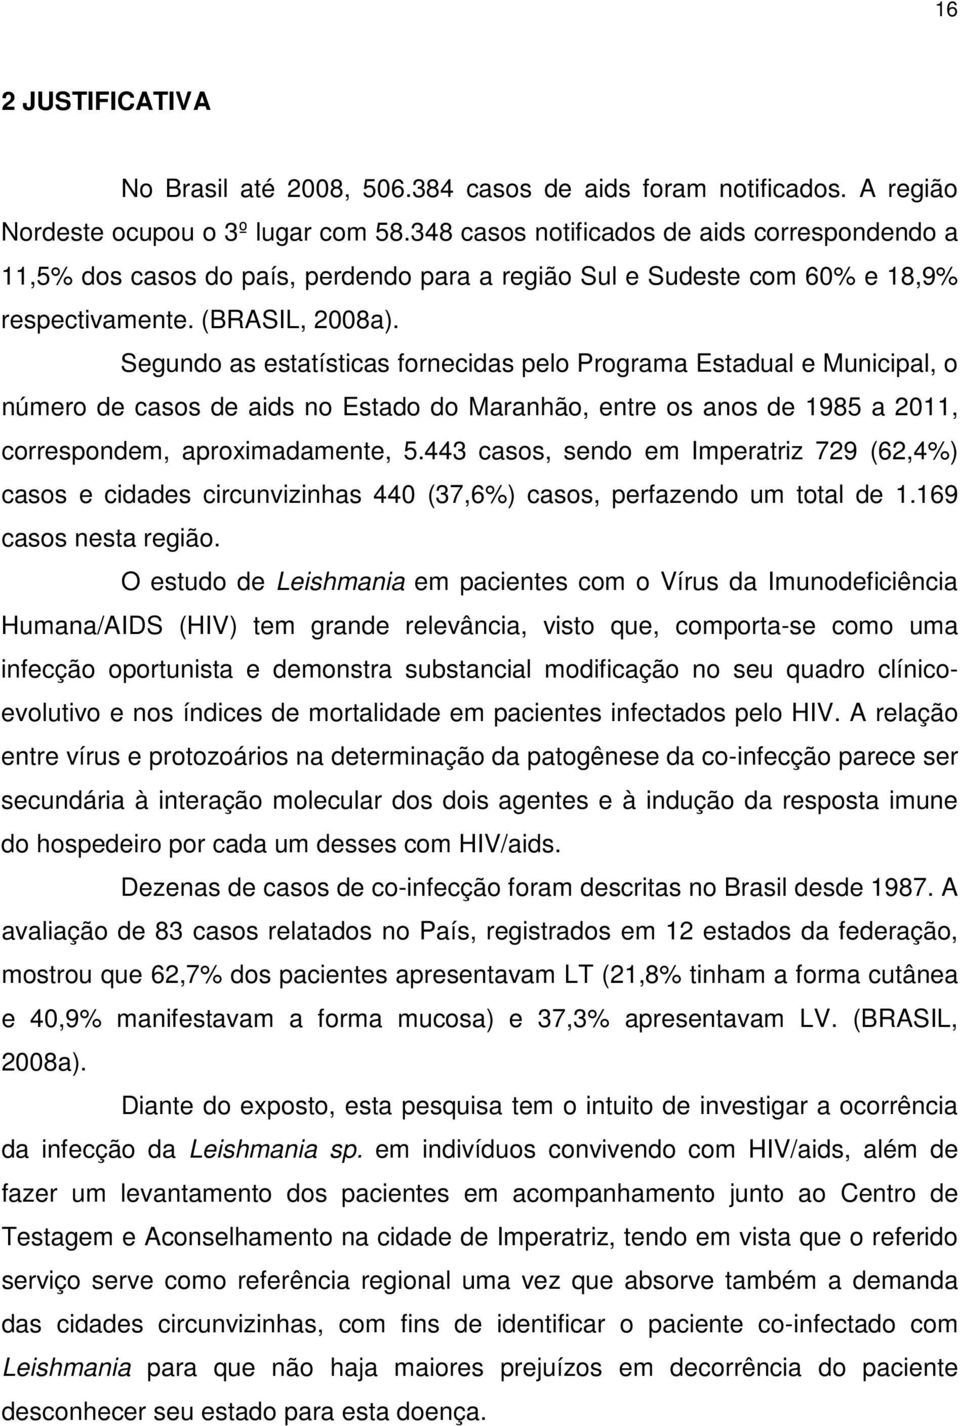 Segundo as estatísticas fornecidas pelo Programa Estadual e Municipal, o número de casos de aids no Estado do Maranhão, entre os anos de 1985 a 2011, correspondem, aproximadamente, 5.